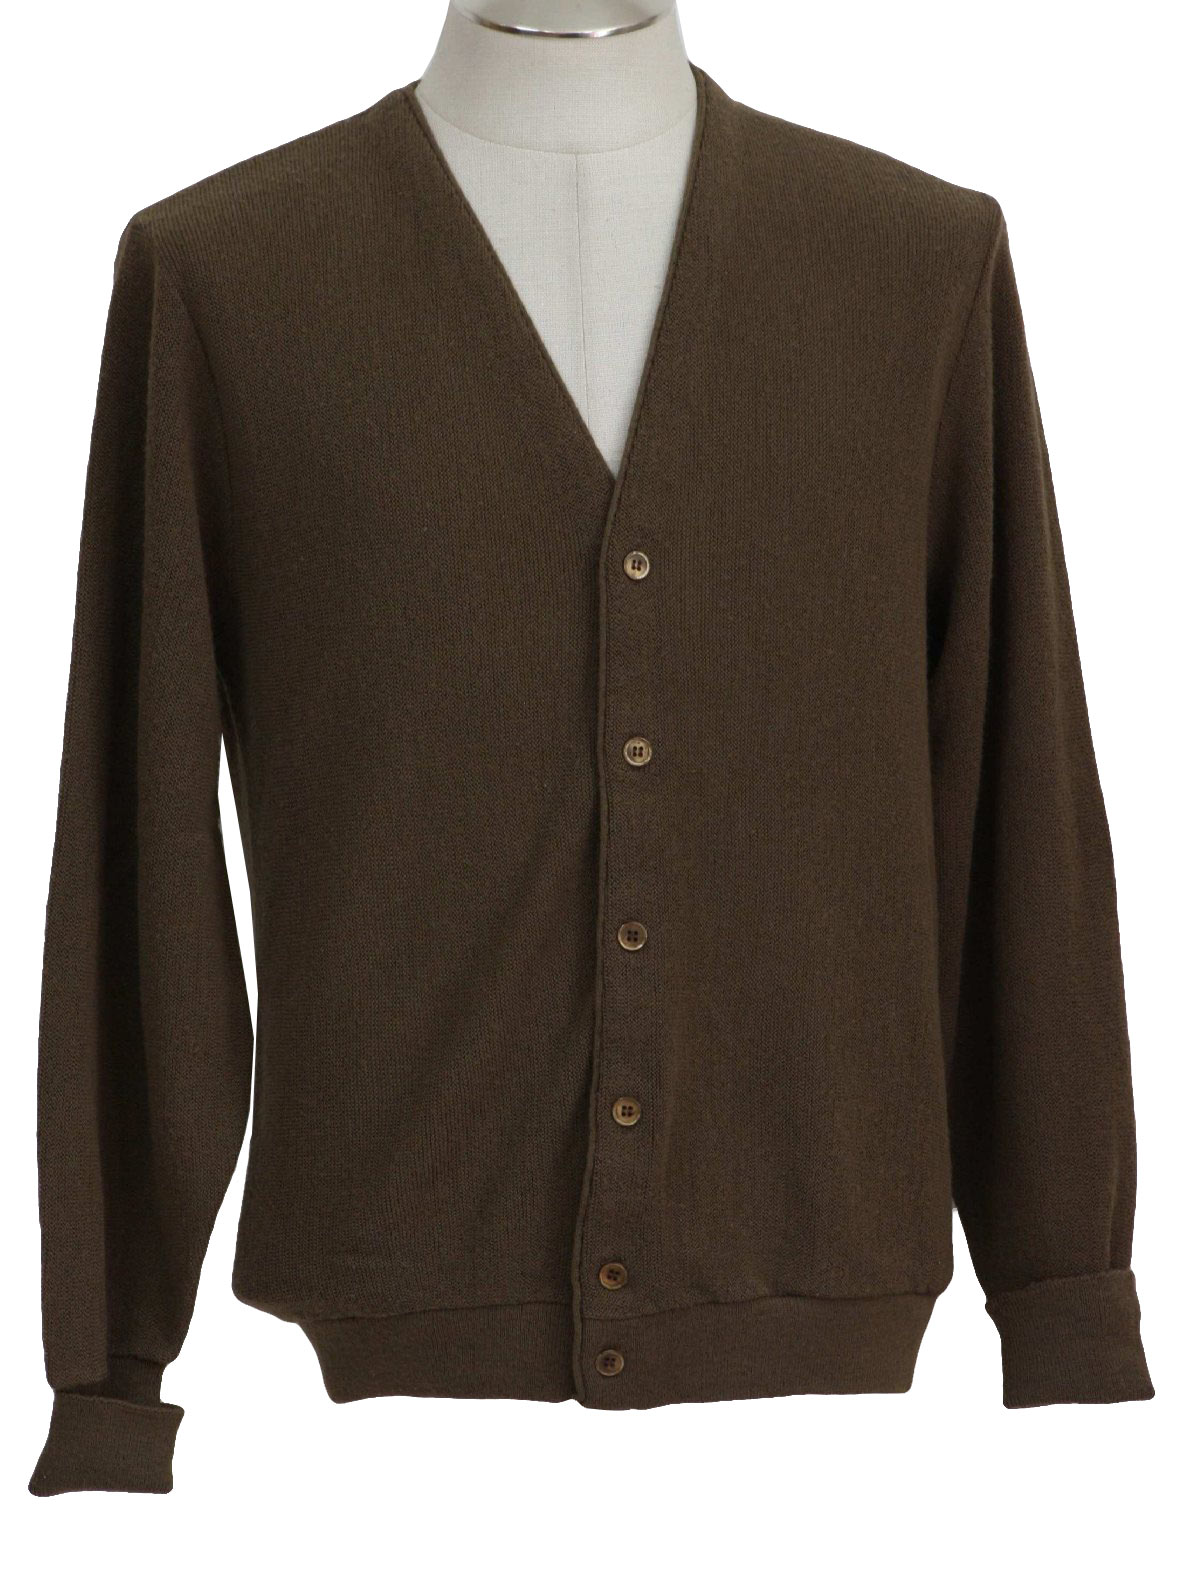 Jantzen Eighties Vintage Caridgan Sweater: 80s -Jantzen- Mens olive ...